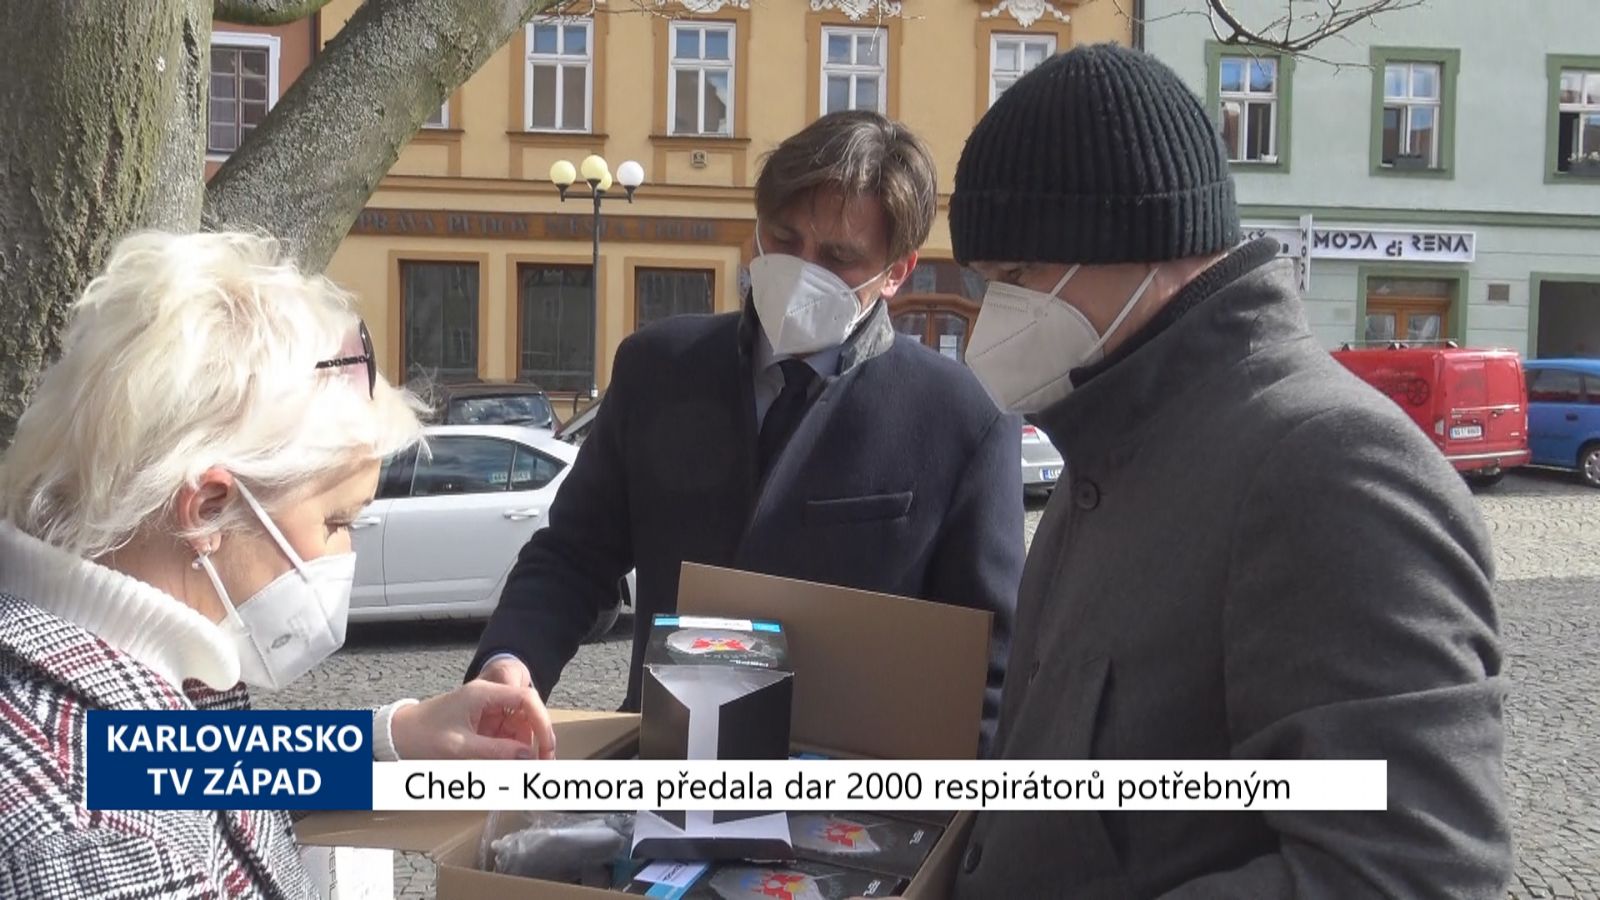 Cheb: Komora předala dar 2000 respirátorů potřebným (TV Západ)